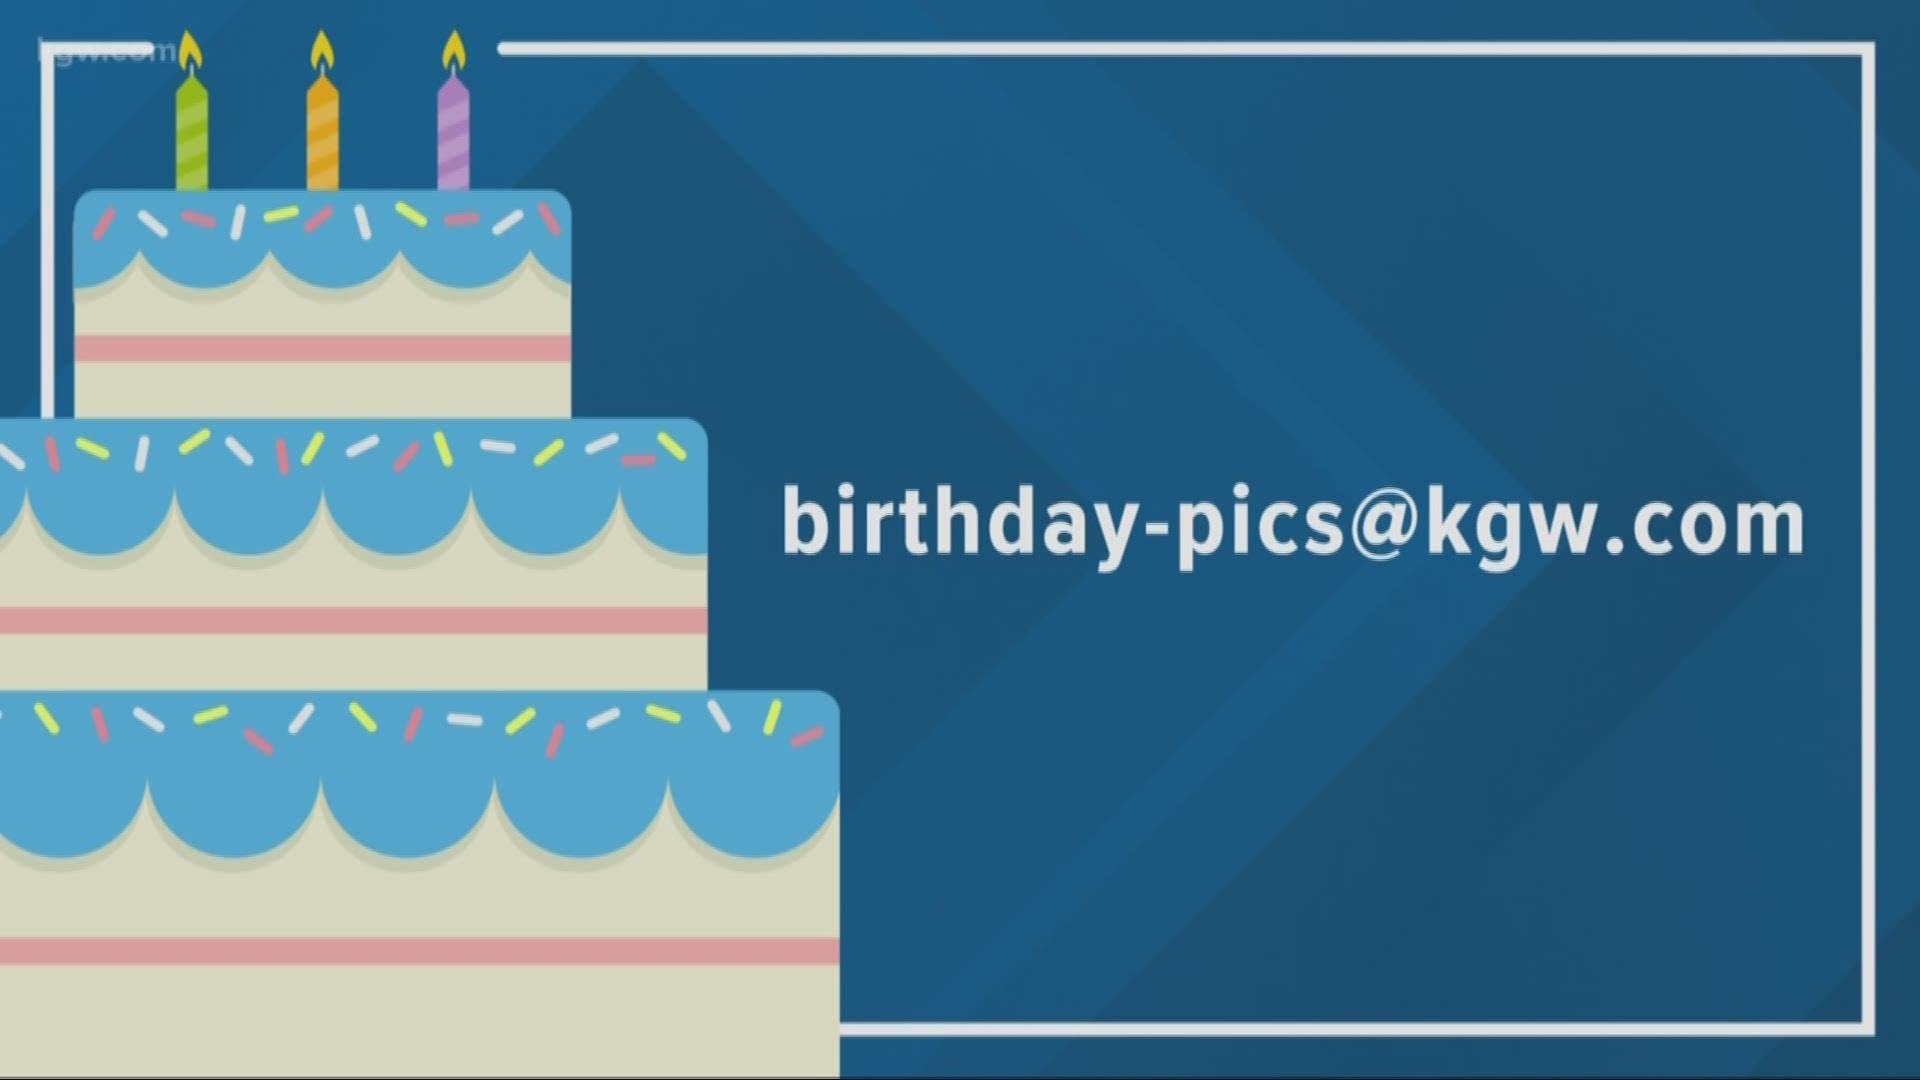 KGW viewer birthdays: 4-16-19